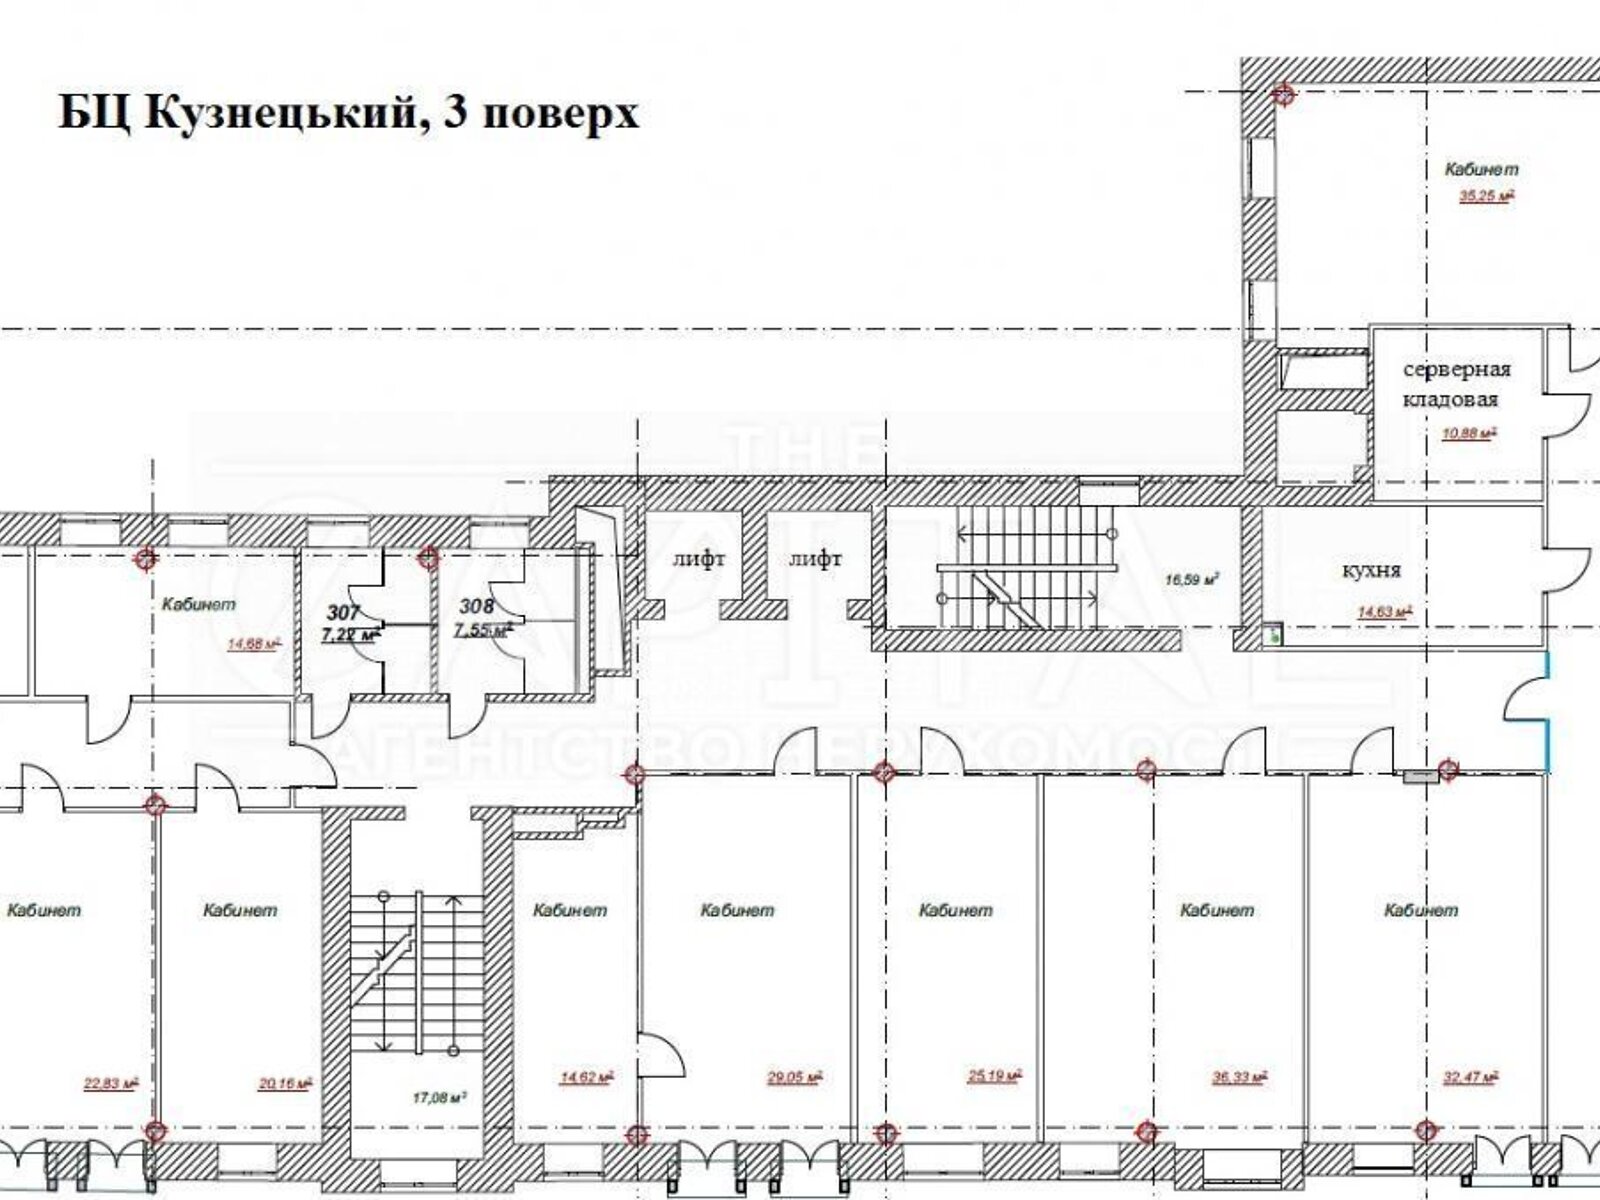 Оренда офісного приміщення в Києві, Моторний провулок 5, приміщень - 16, поверх - 3 фото 1